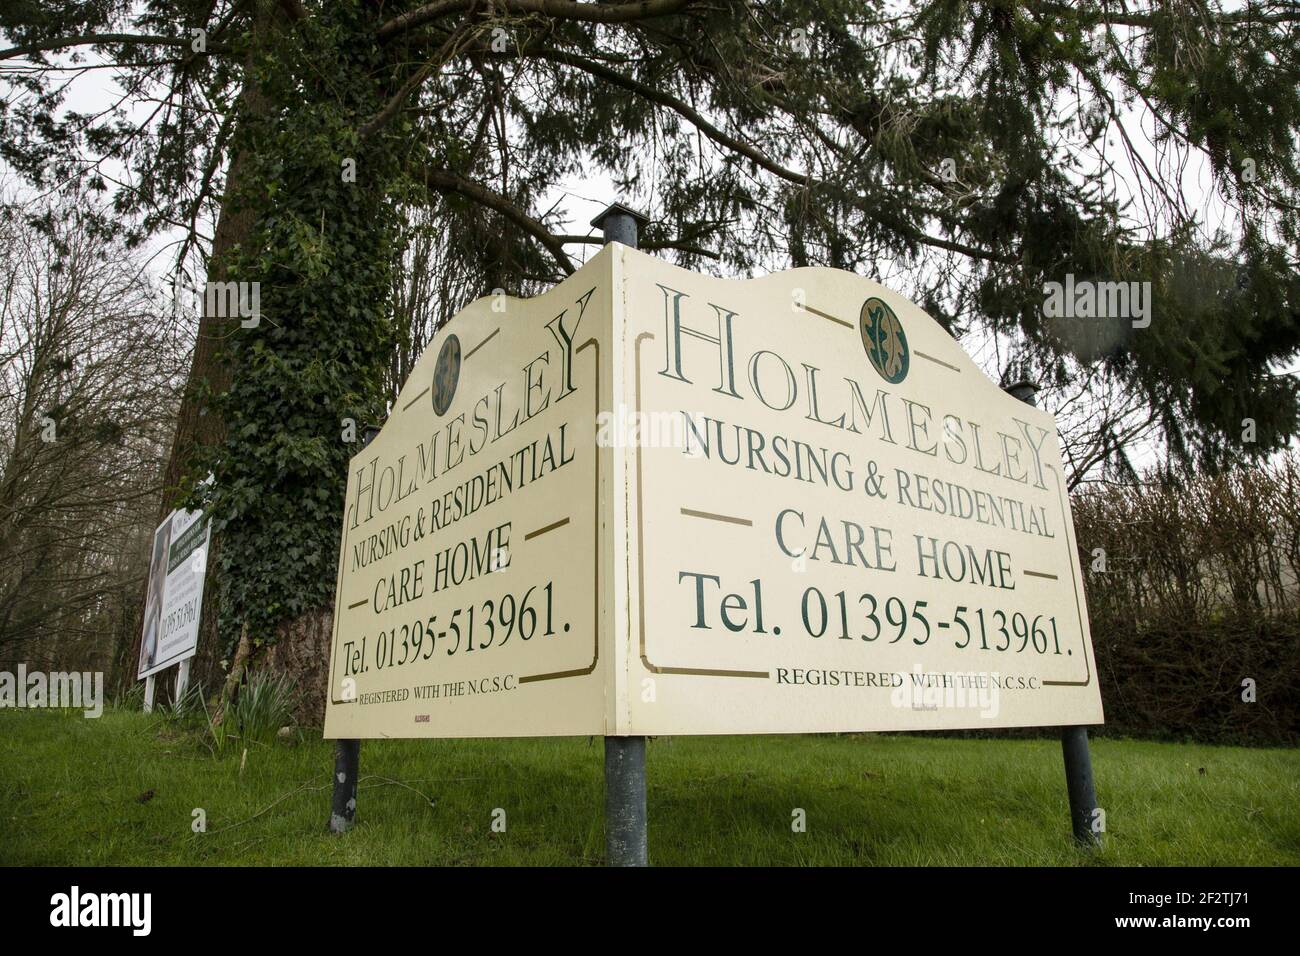 Holmesley Nursing and Residential Care Home, una casa di cura appartata a Sidford, alla periferia di Sidmouth, Devon, dove nove residenti sono morti entro i giorni di Covid 19. Due membri del personale sono stati arrestati e rilasciati in cauzione, accusati di negligenza intenzionale. Foto Stock